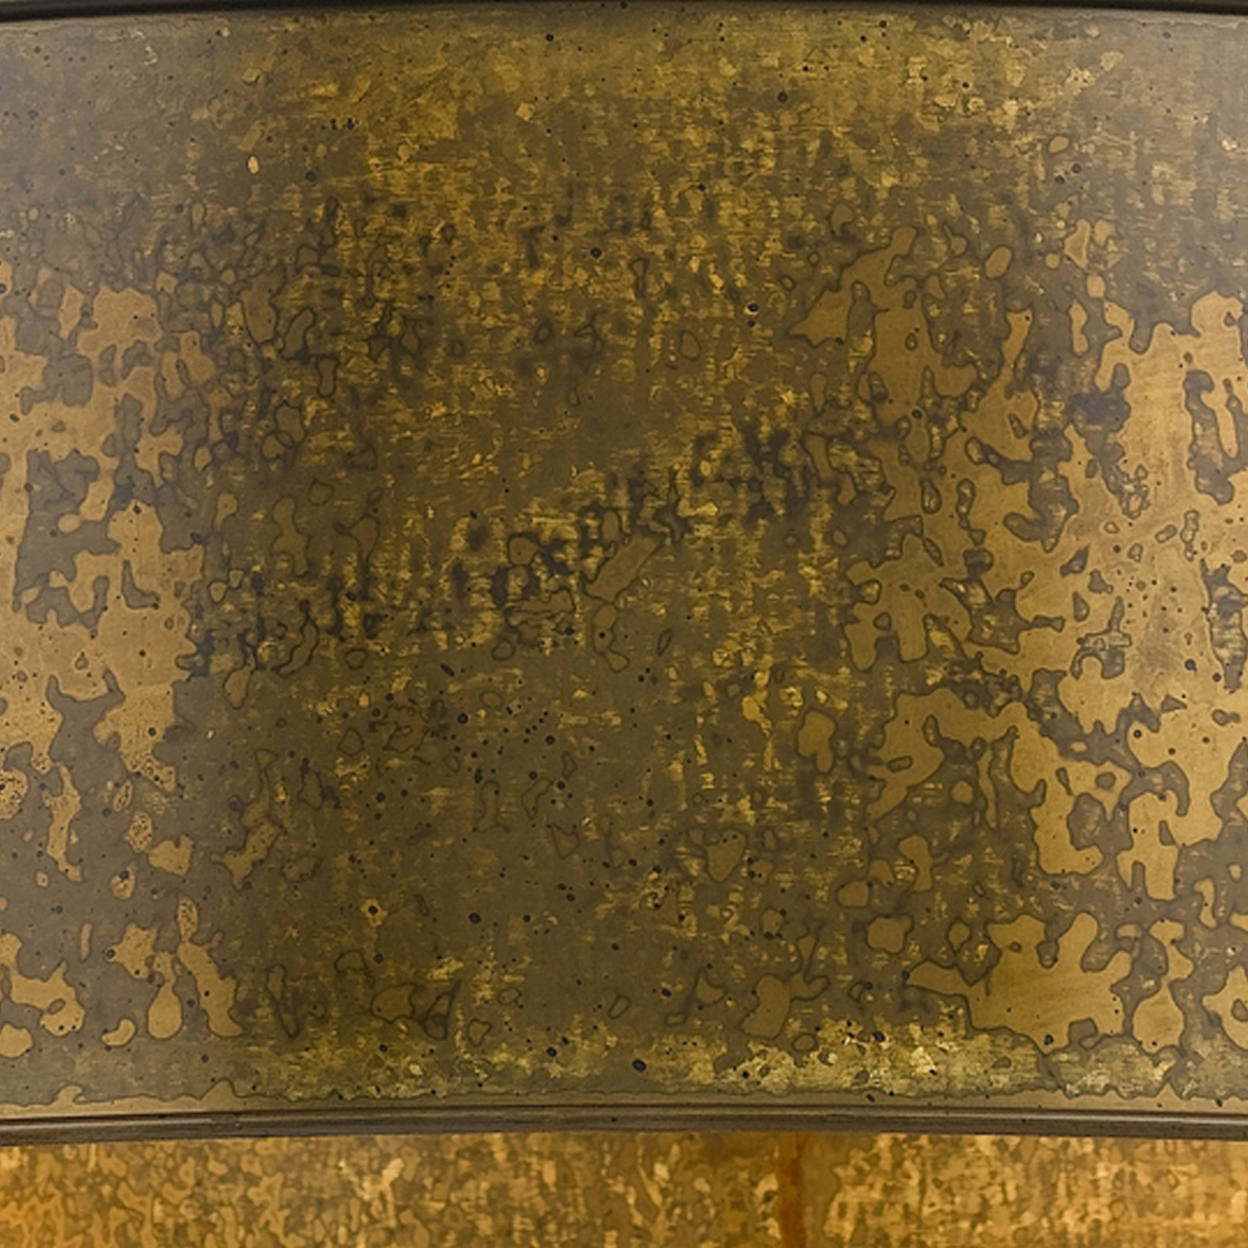 60 X 5 Watt Round Metal Frame Chandelier With 6 Foot Chain, Distressed Gold- Saltoro Sherpi